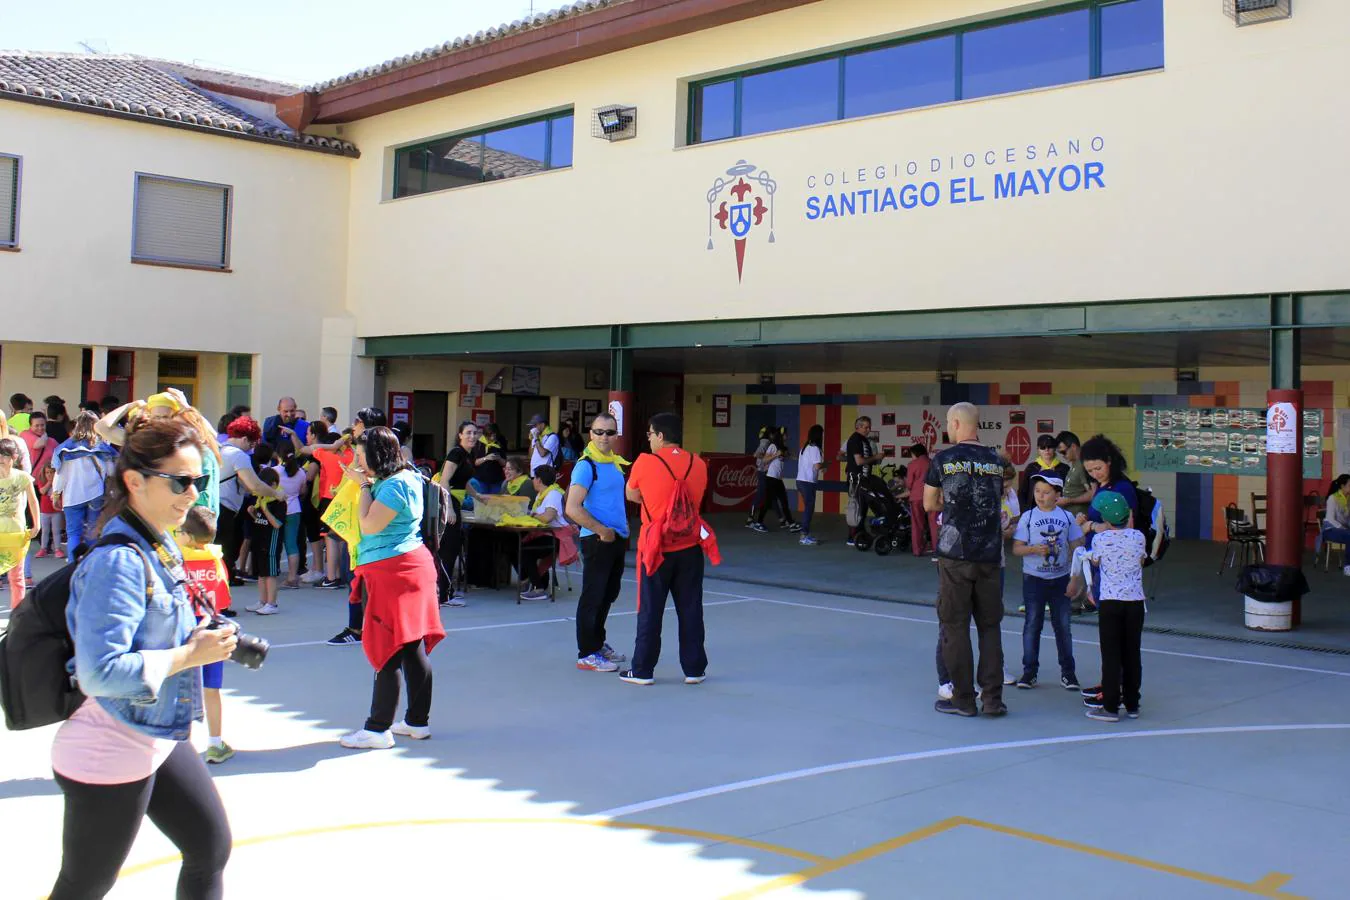 La marcha del colegio Santiago el Mayor, en imágenes